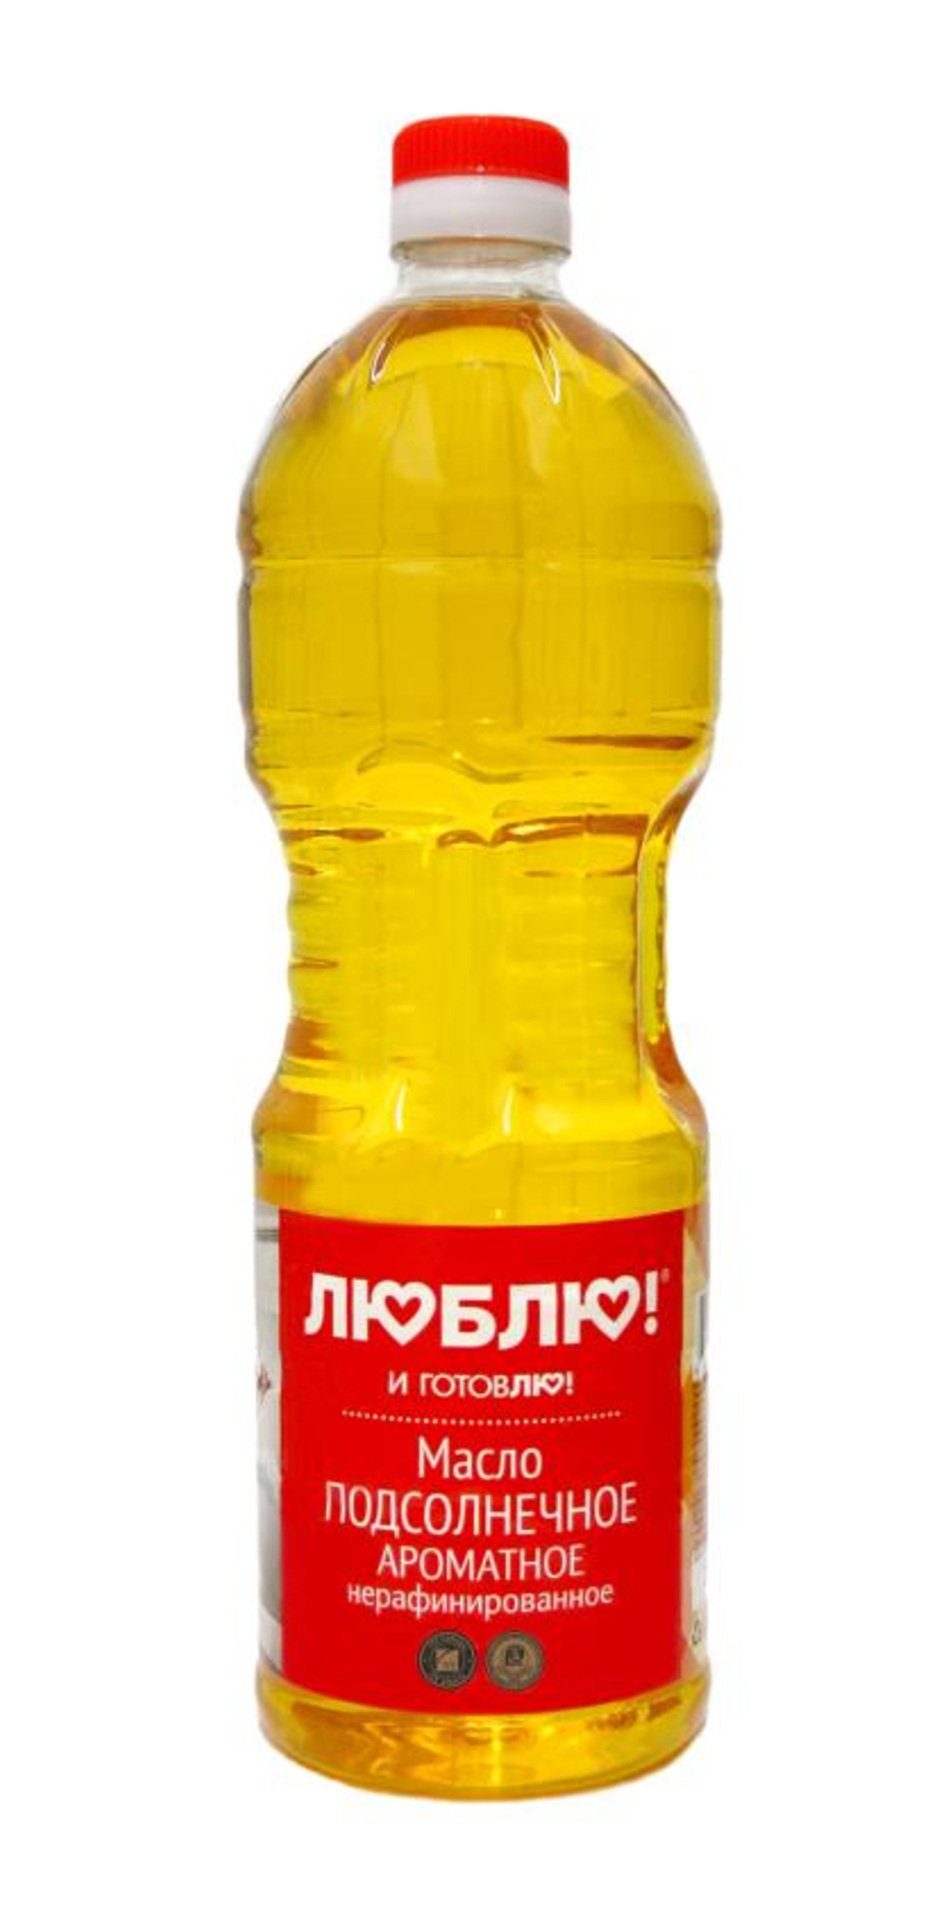 Масло подсолнечное нерафинированное ароматное 1 литр ООО 